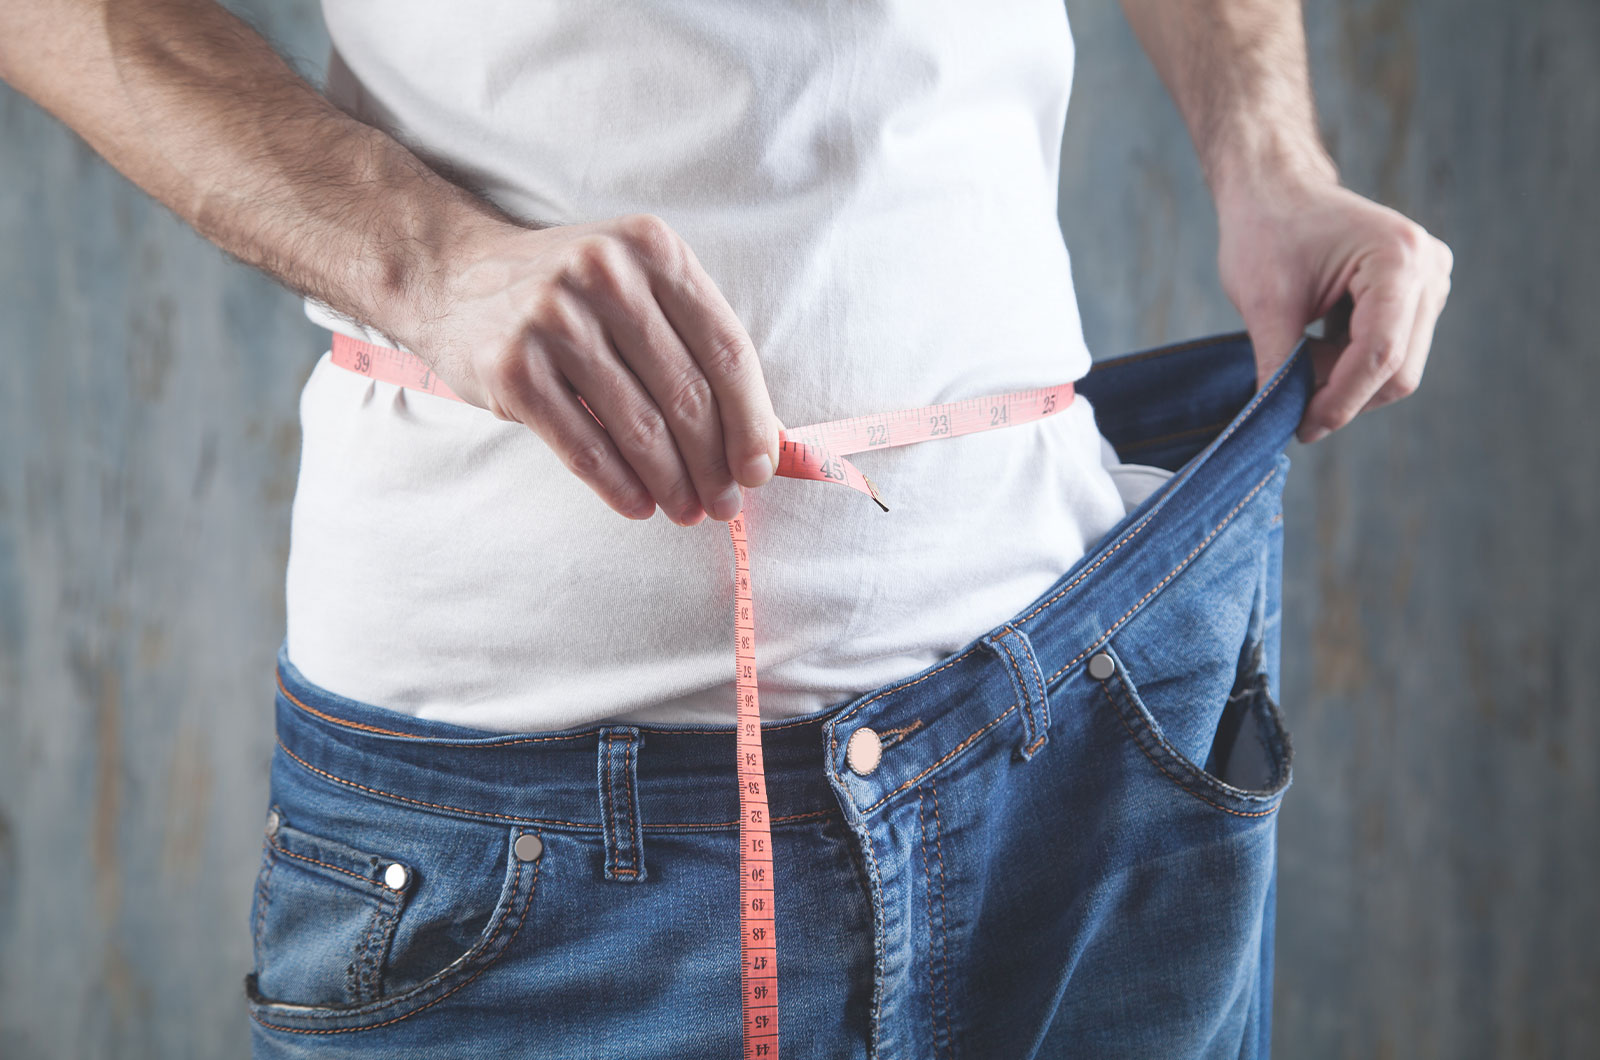 Messung vom Bauchumfang mit einem Bandmaß, durch Gewichtsreduktion wurden die Jeans viel zu weit